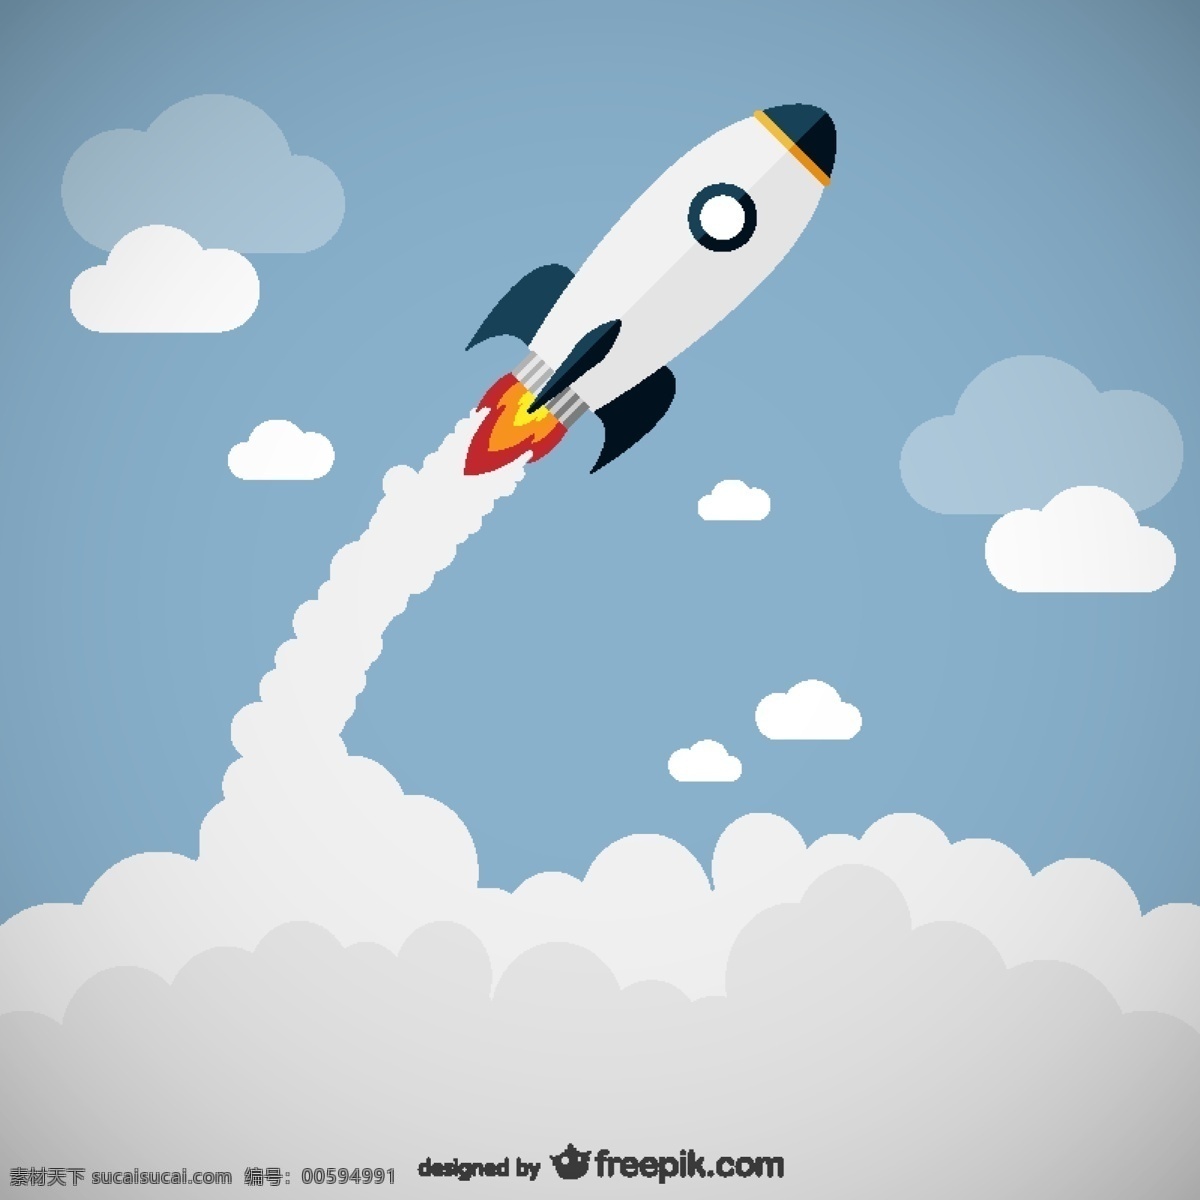 火箭发射向量 天空 火箭 运输 企业家 启动 发射 火箭发射 空中运输 白色